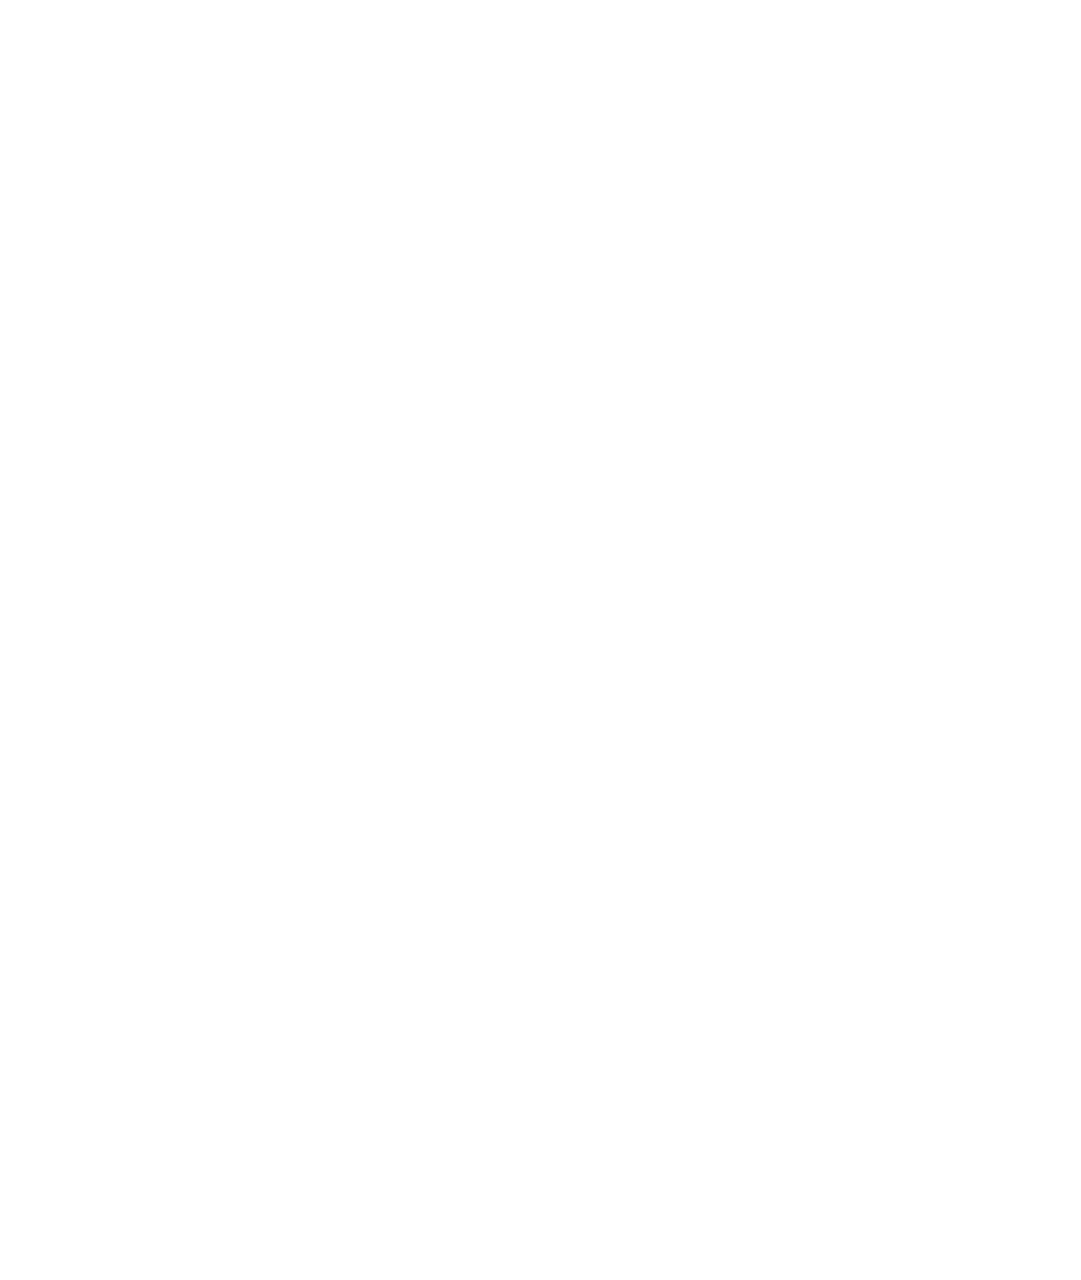 BIRCH BARK EDITING